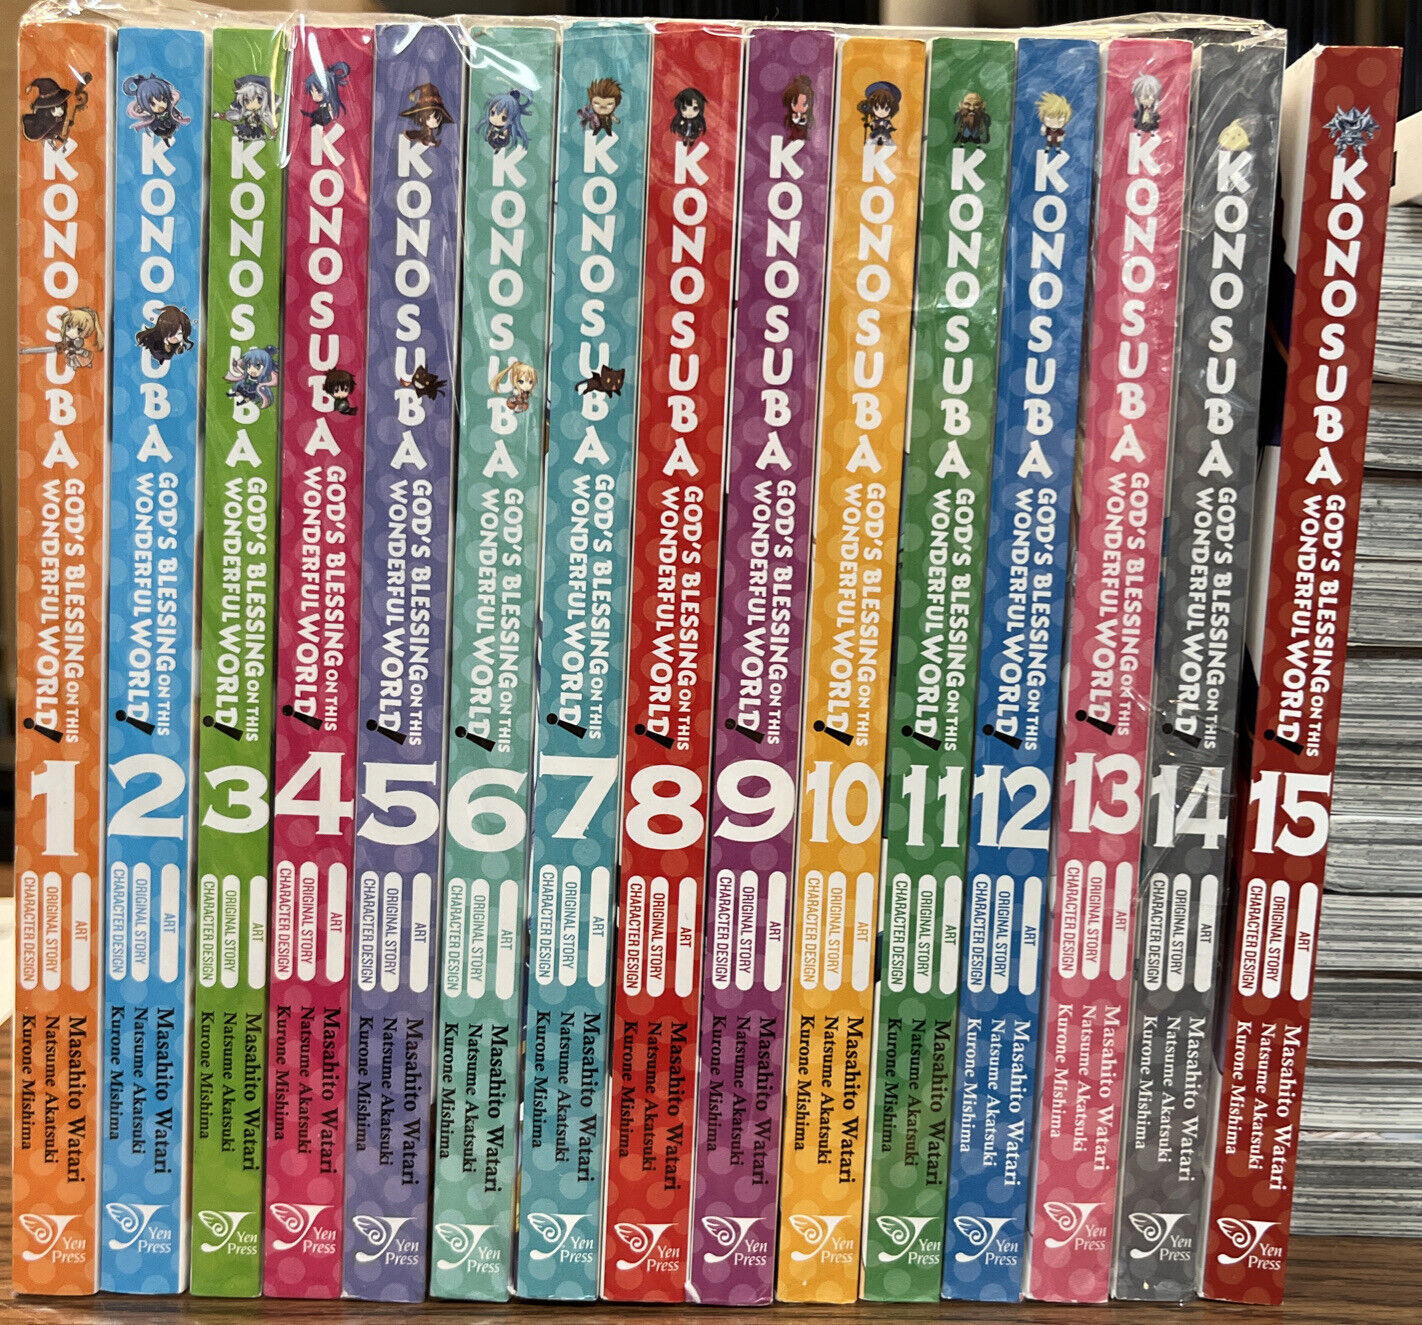 KonoSuba: God's Blessing on This Wonderful World! Manga Collection (v1 - 15)